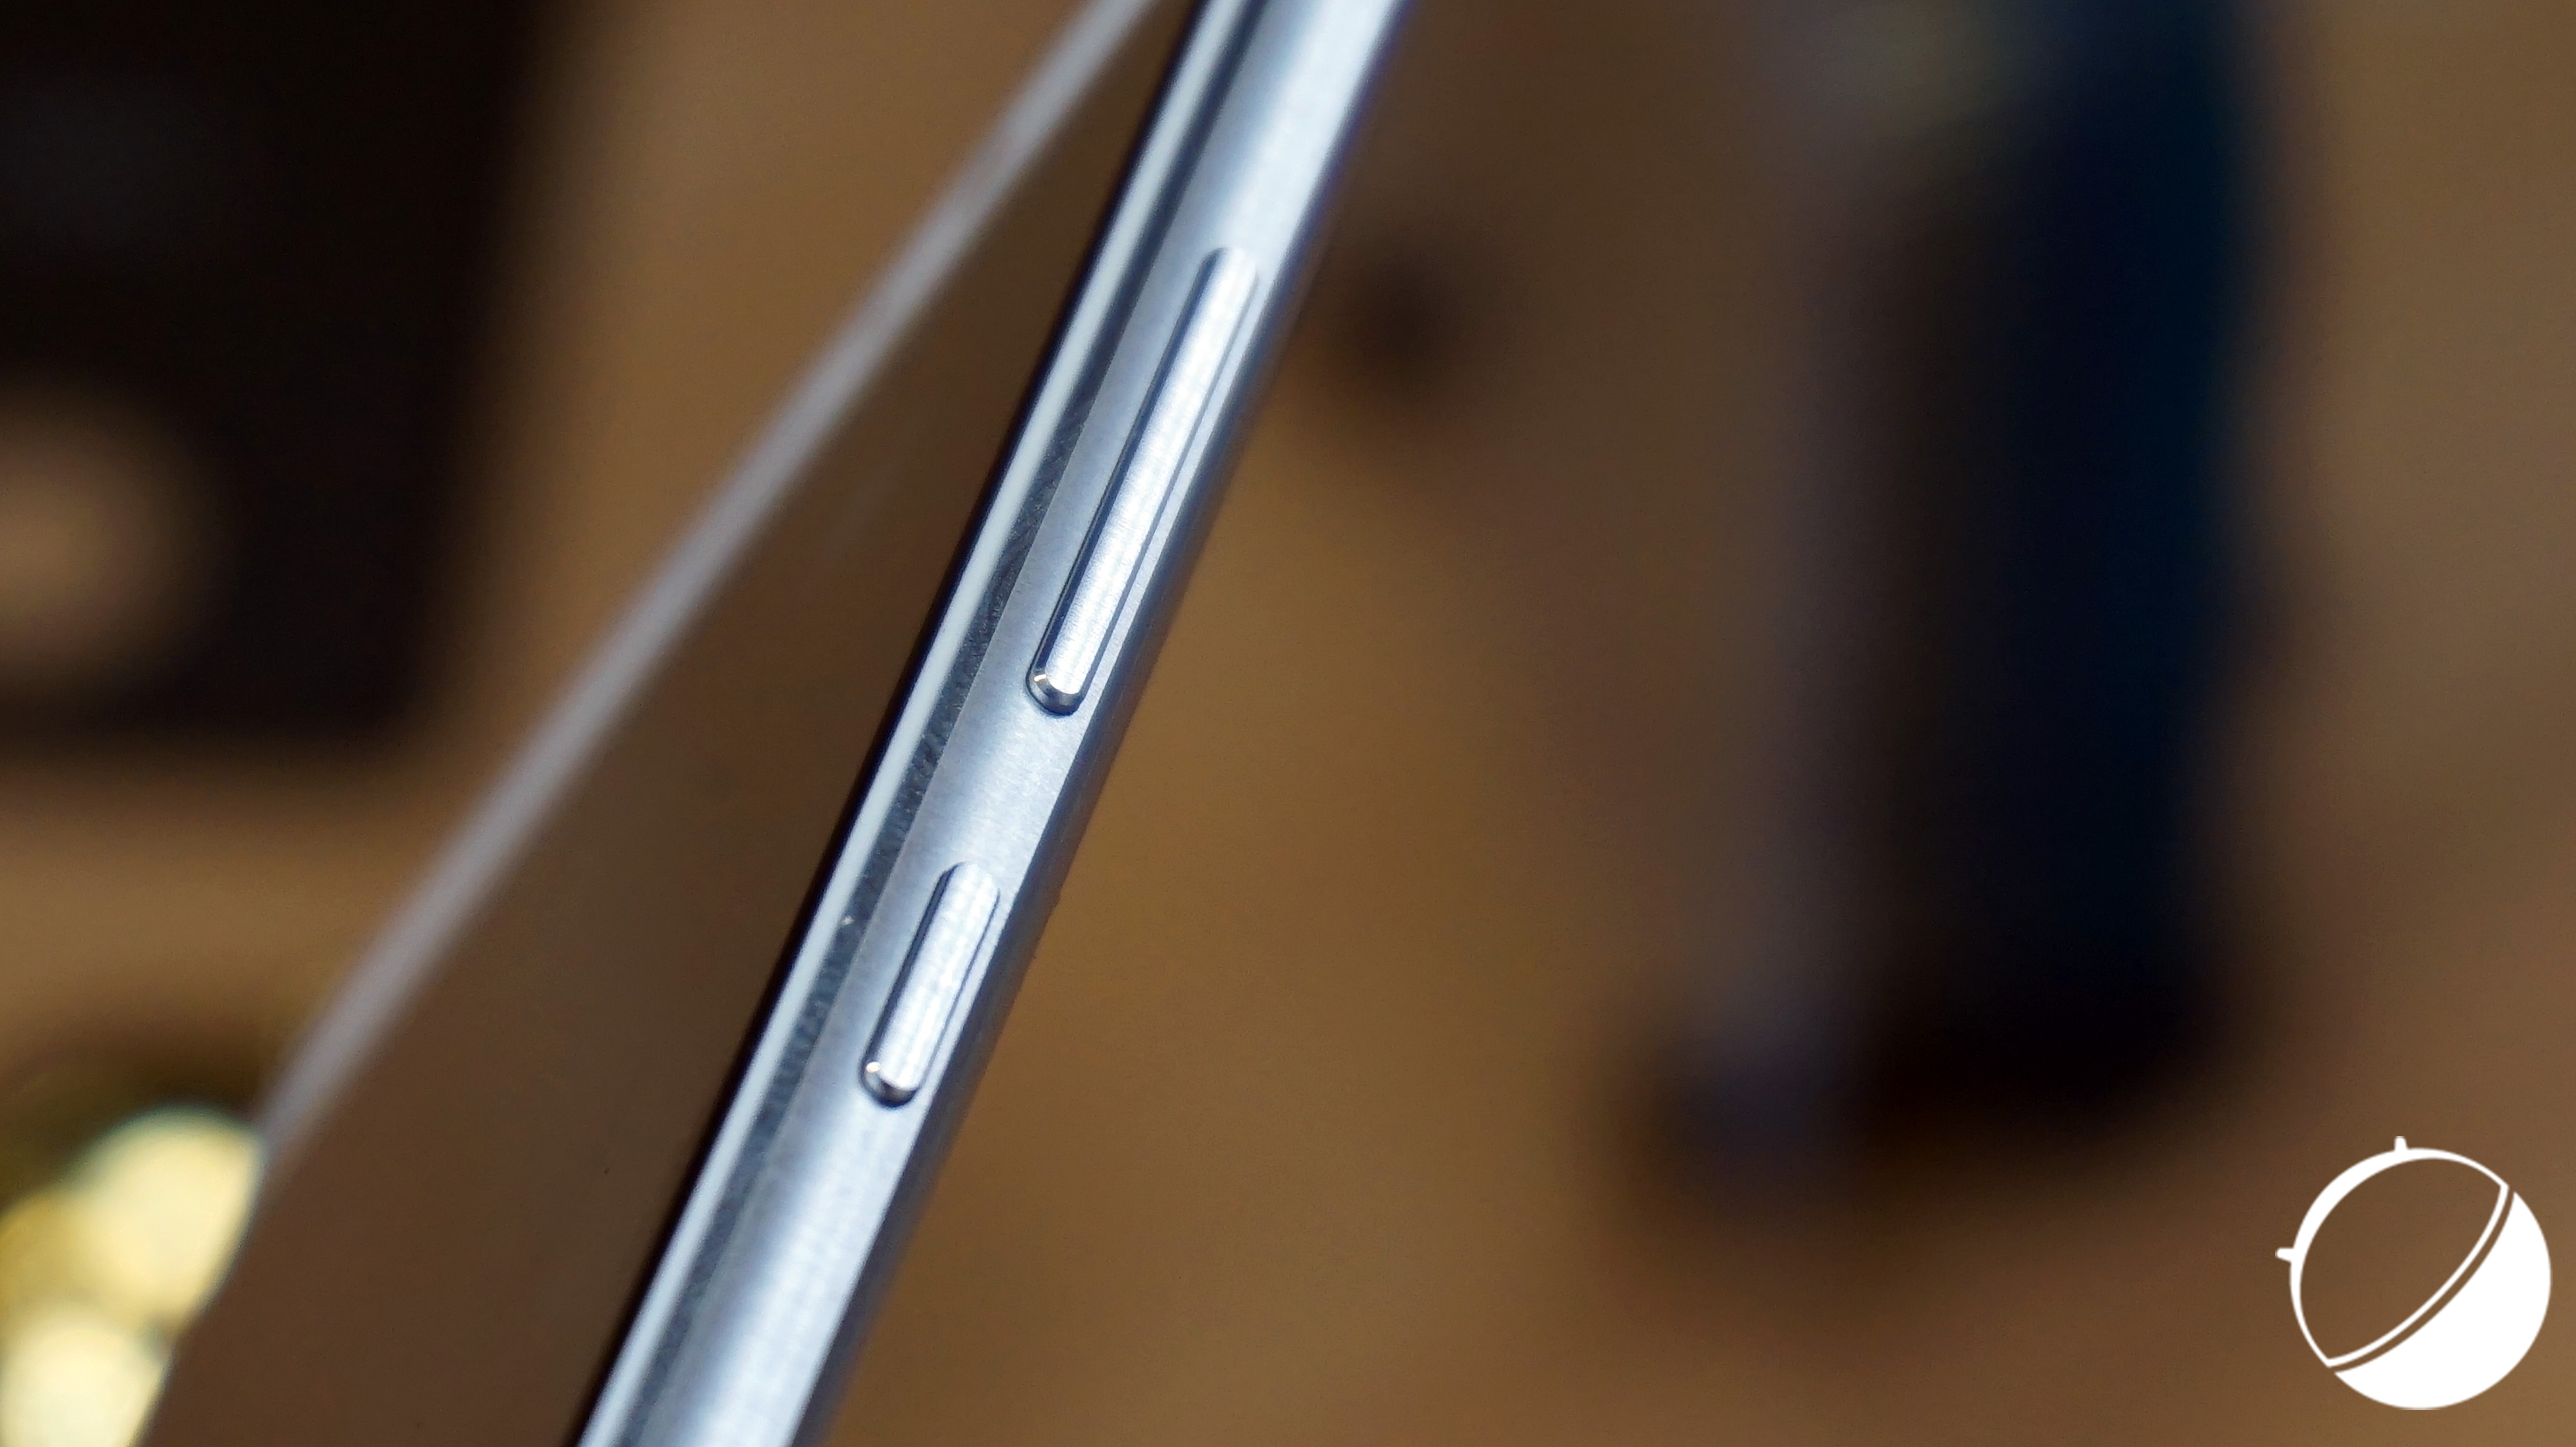 Le Huawei Mate 10 sera meilleur que l’iPhone 8 affirme un responsable de Huawei